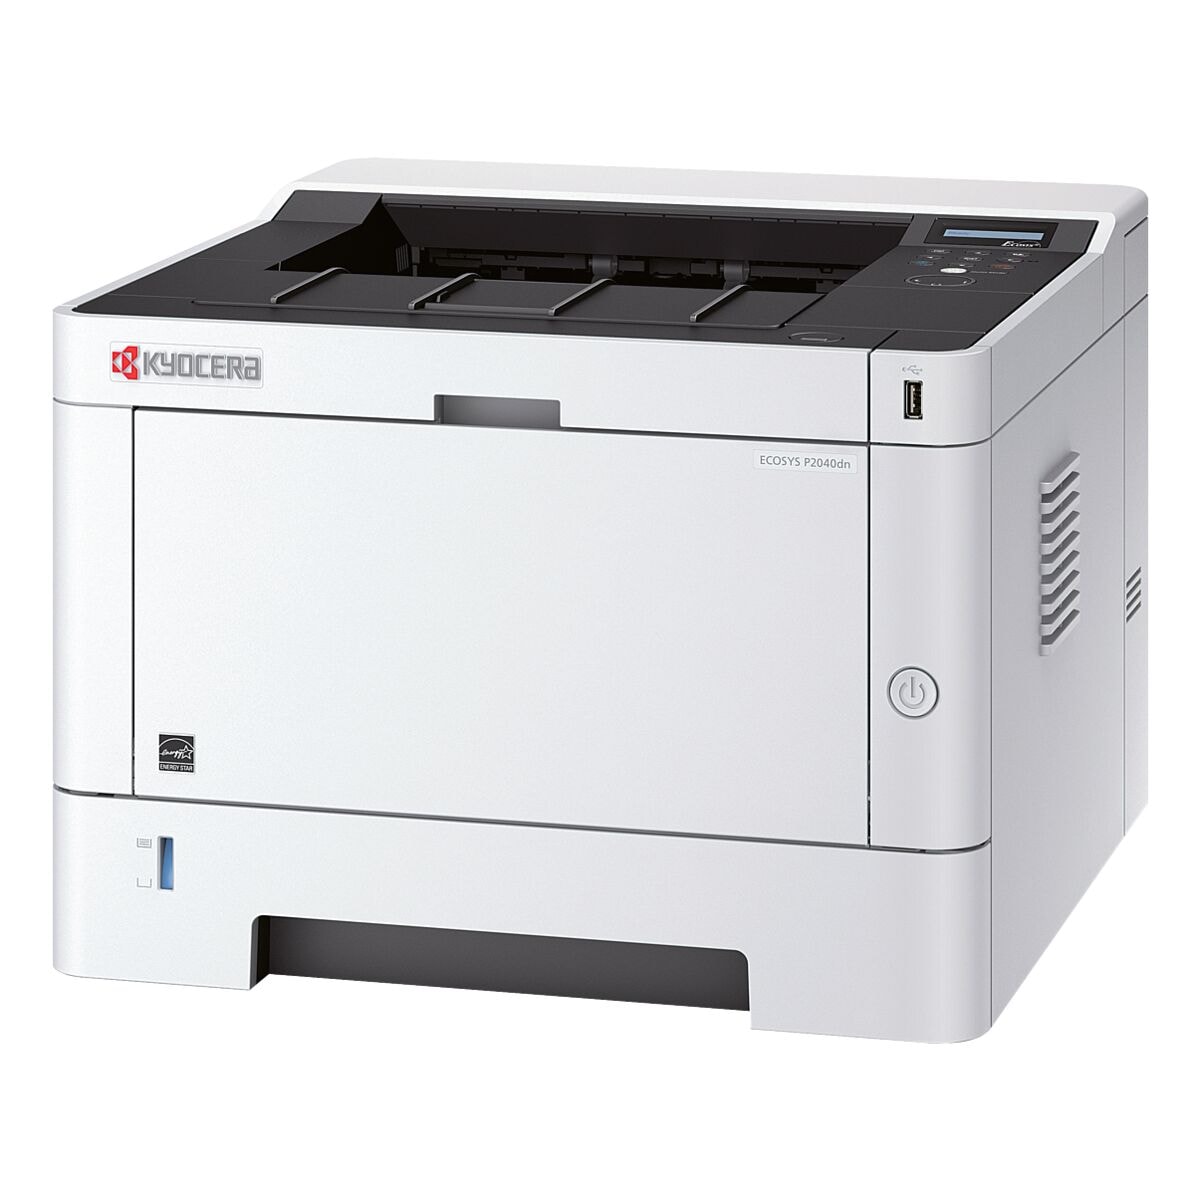 Kyocera ECOSYS P2040DN Laserdrucker, A4 schwarz wei Laserdrucker, 1200 x 1200 dpi, mit LAN